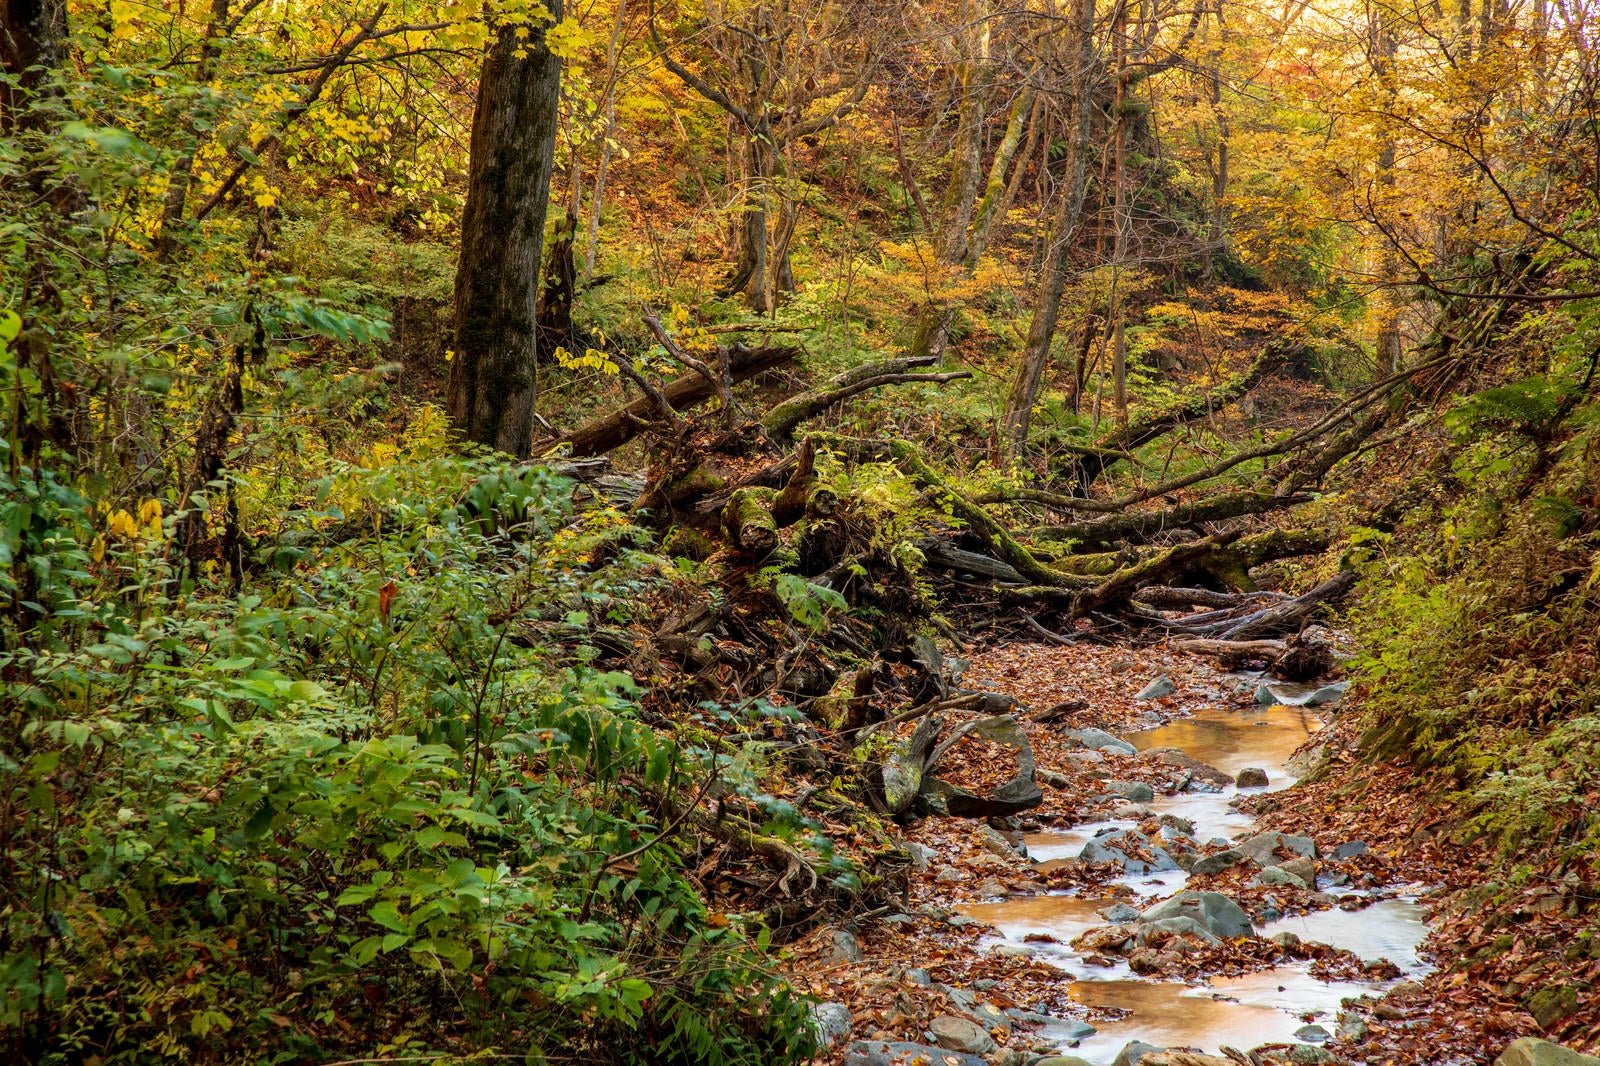 「紅葉した木々と朽ちた木を縫うように流れる渓流」の写真